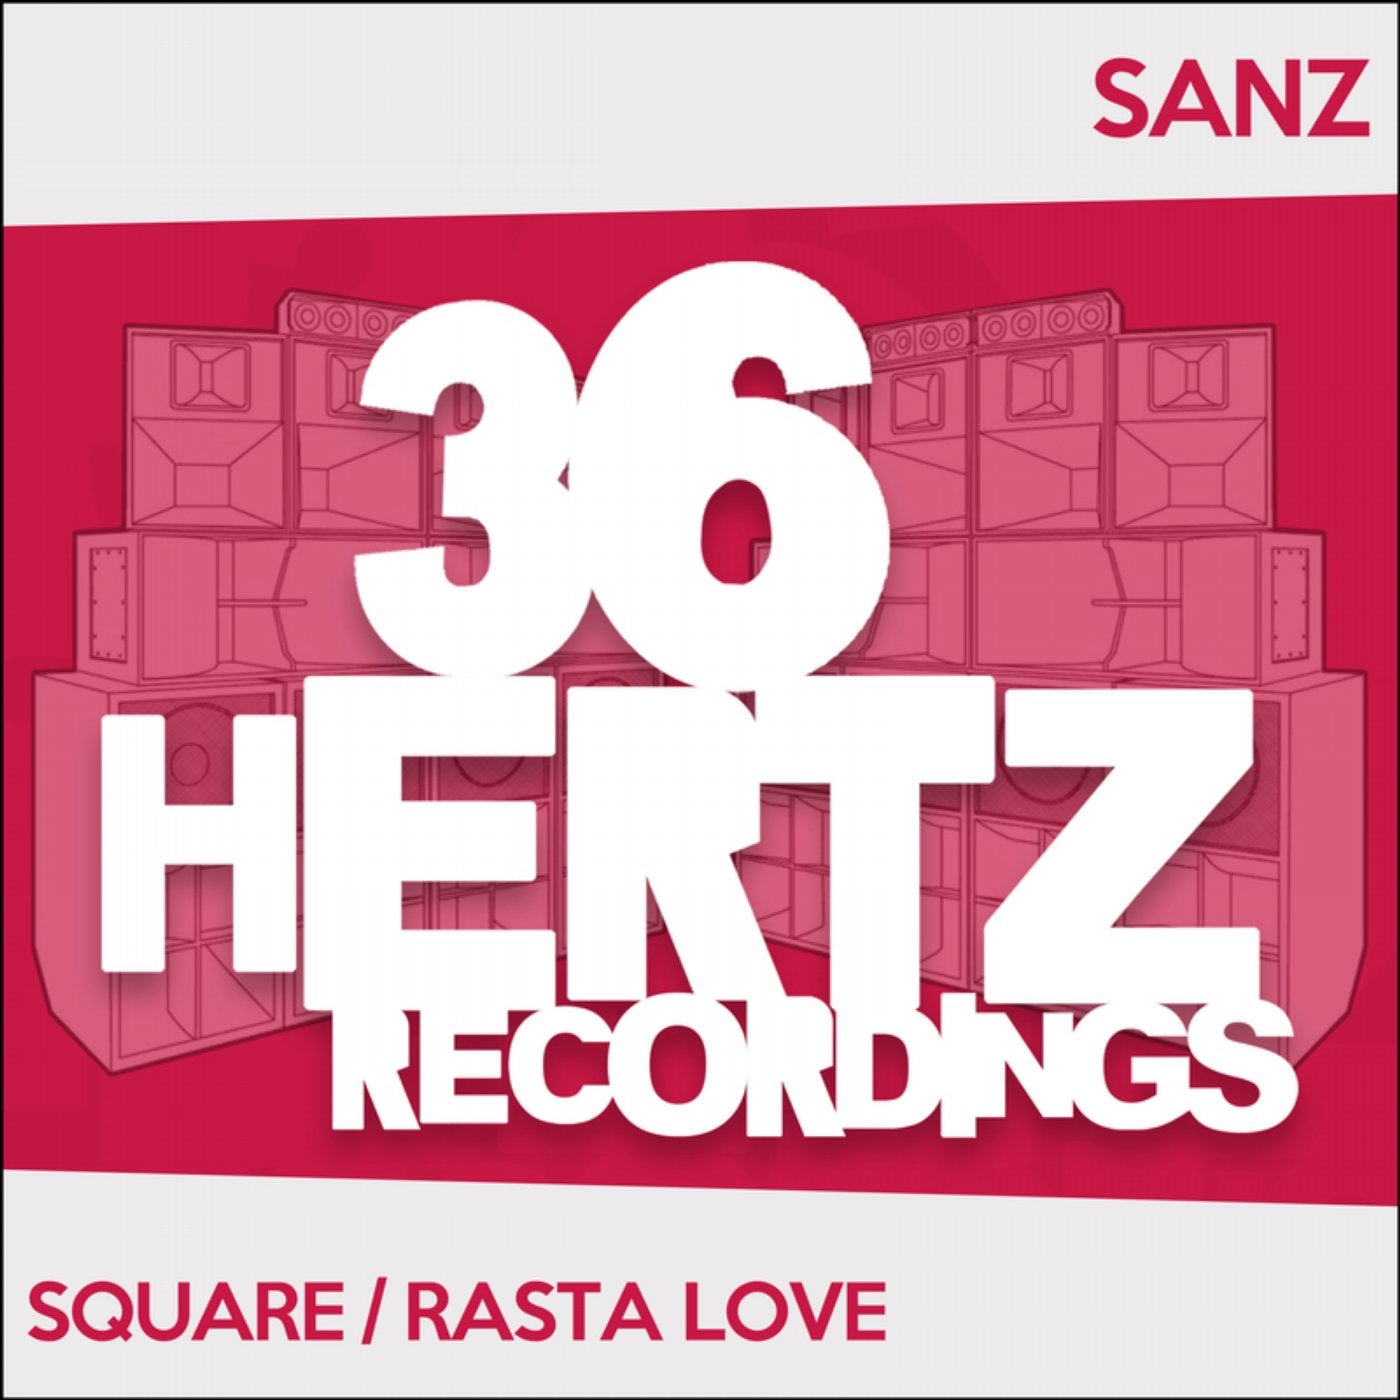 Square / Rasta Love